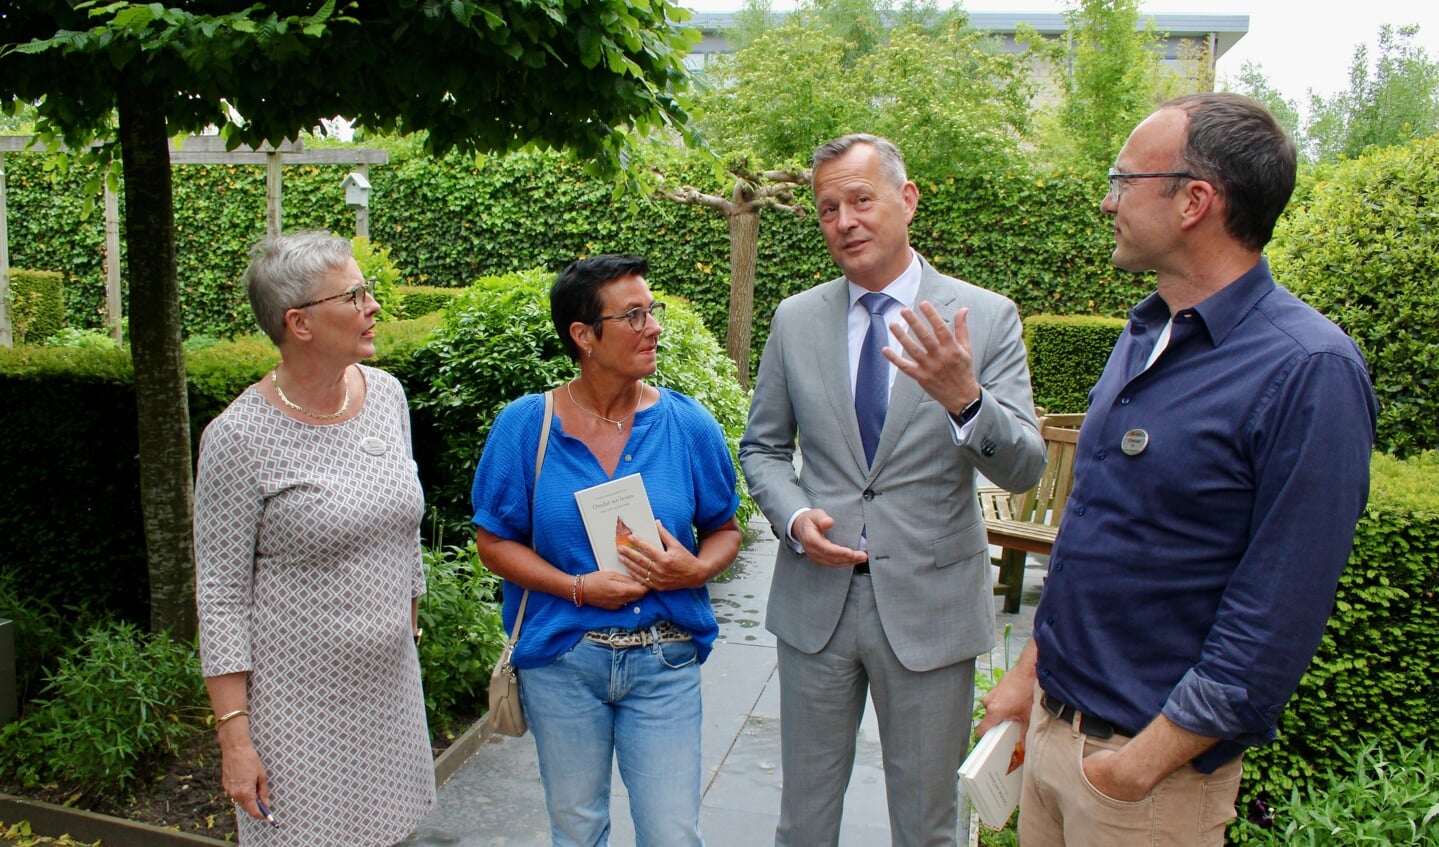 Arthur van Dijk in de tuin van Bardo in gesprek met Simone Koops (links), Jacqueline Buijs en Christiaan Rhodius (rechts).